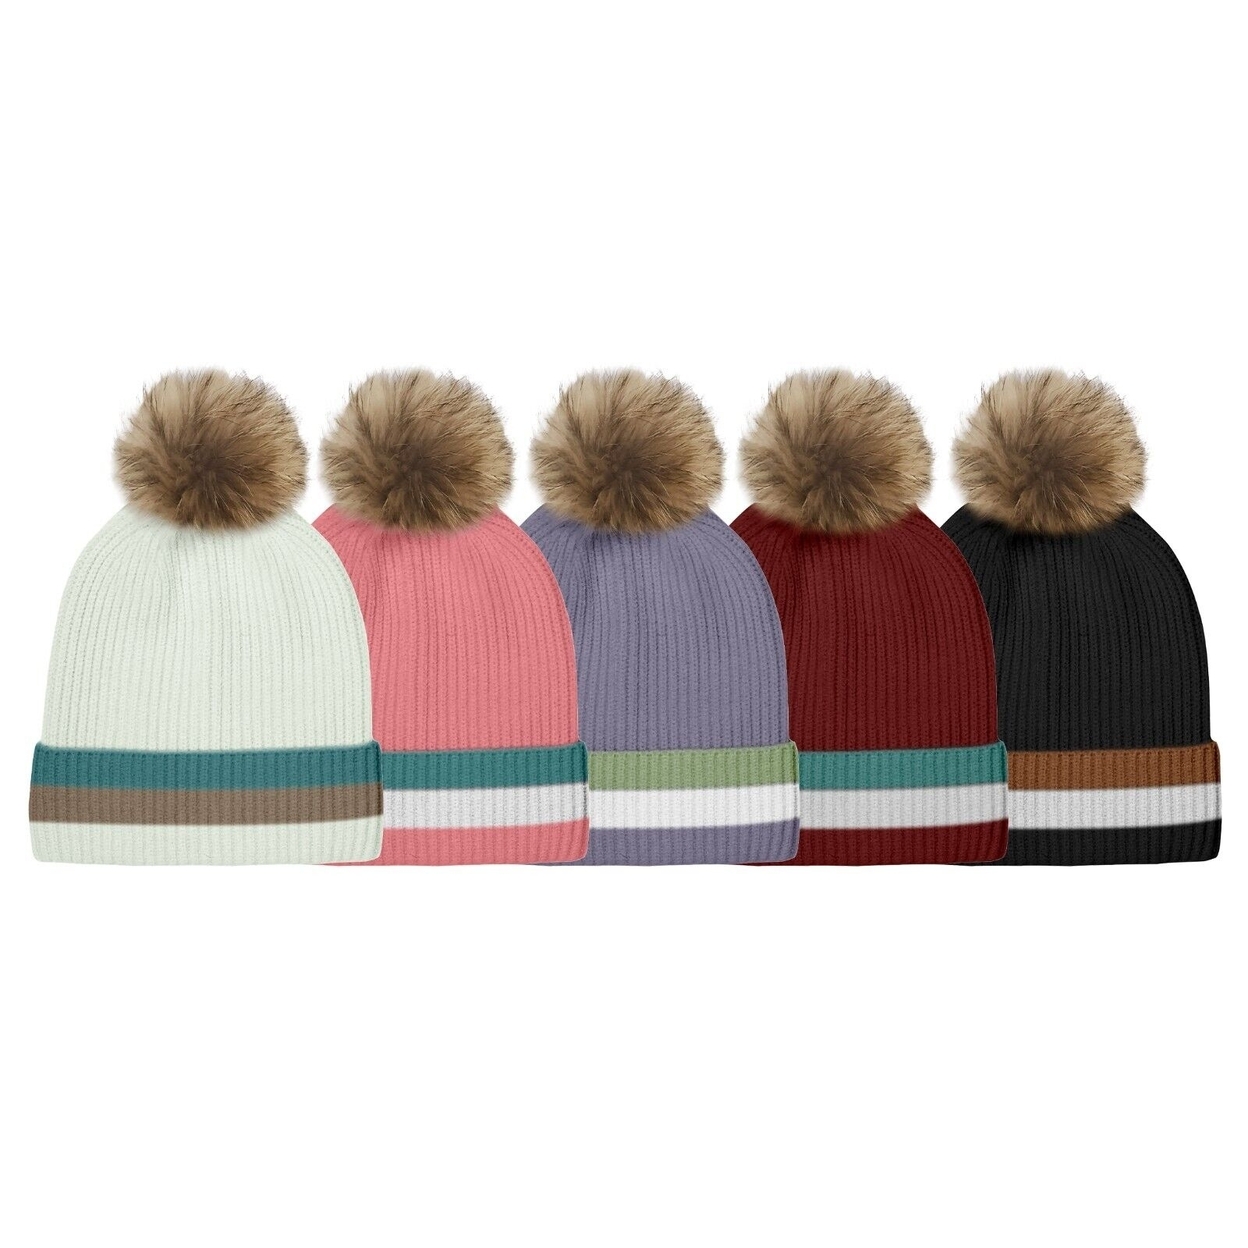 2-Pack: Women's Ultra-Soft Winter Warm Knit Feel Pom Pom Hat W/ Faux Fur Lining - Striped